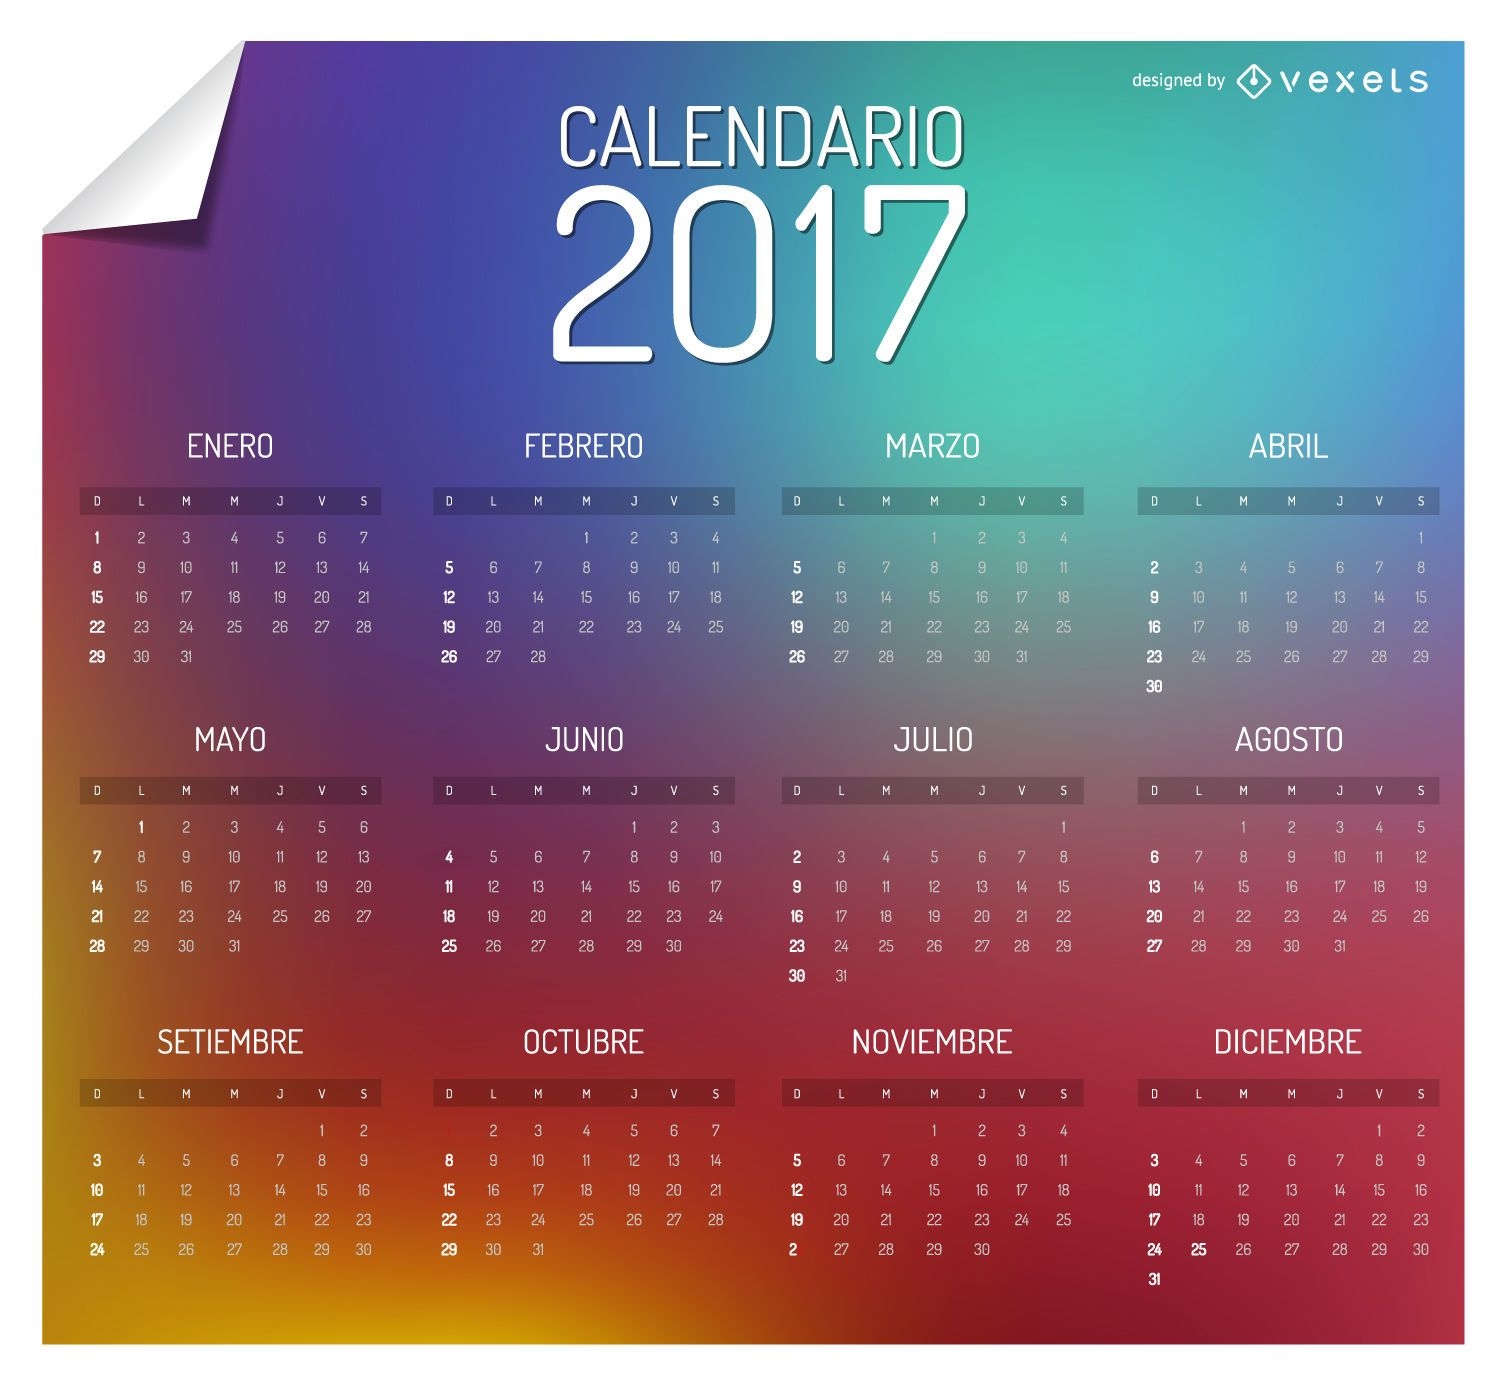 Bunter Kalender 2017 in Spanisch